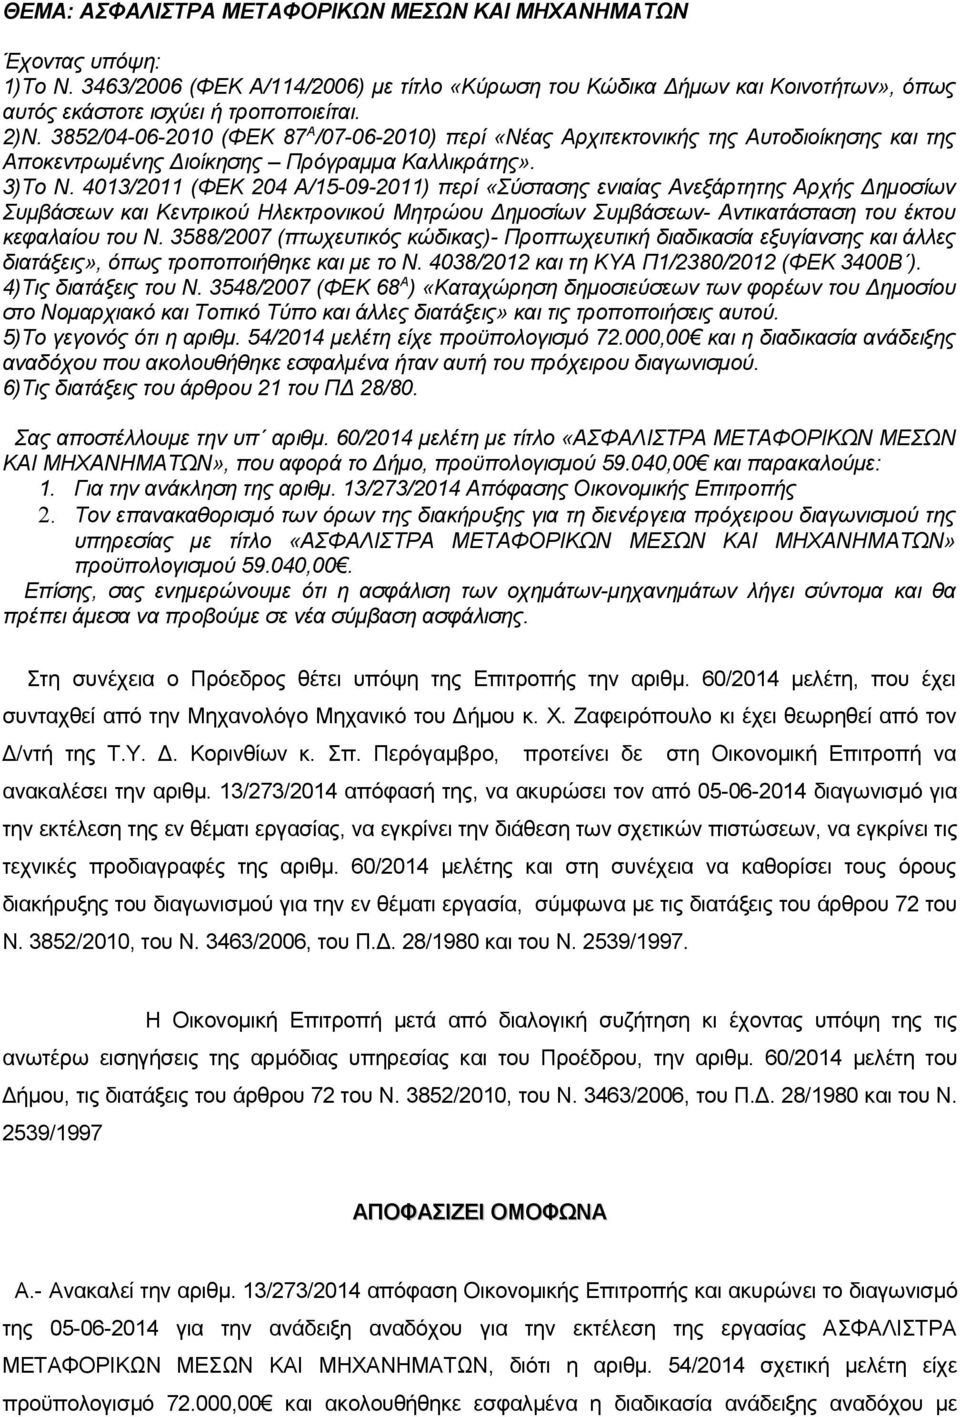 4013/2011 (ΦΕΚ 204 Α/15-09-2011) περί «Σύστασης ενιαίας Ανεξάρτητης Αρχής Δημοσίων Συμβάσεων και Κεντρικού Ηλεκτρονικού Μητρώου Δημοσίων Συμβάσεων- Αντικατάσταση του έκτου κεφαλαίου του Ν.